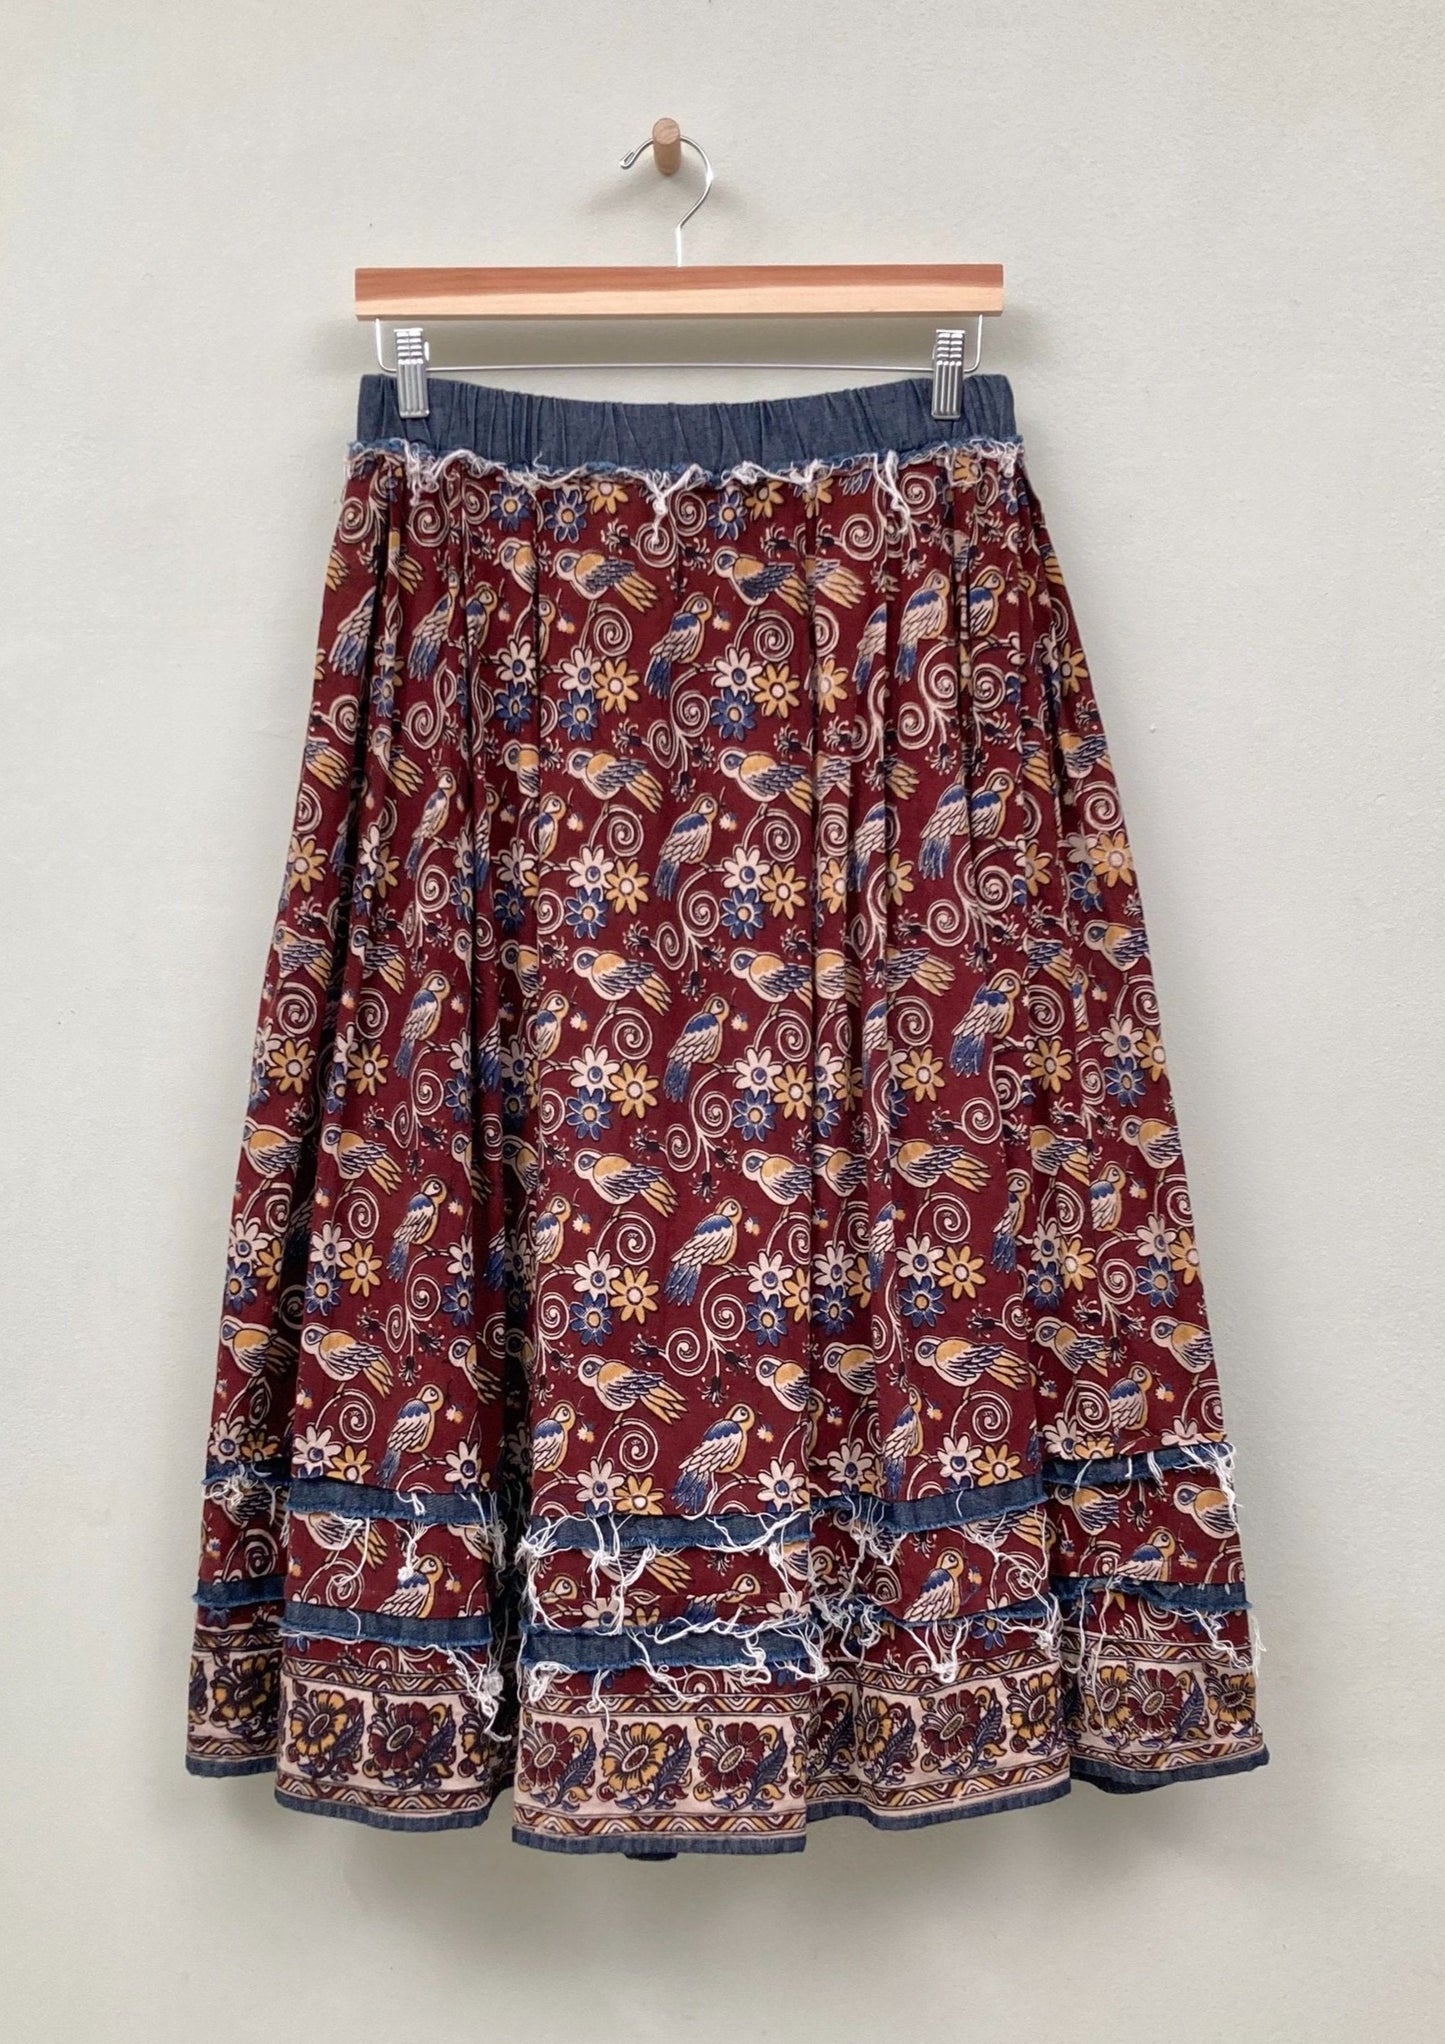 block print belle skirt on hanger